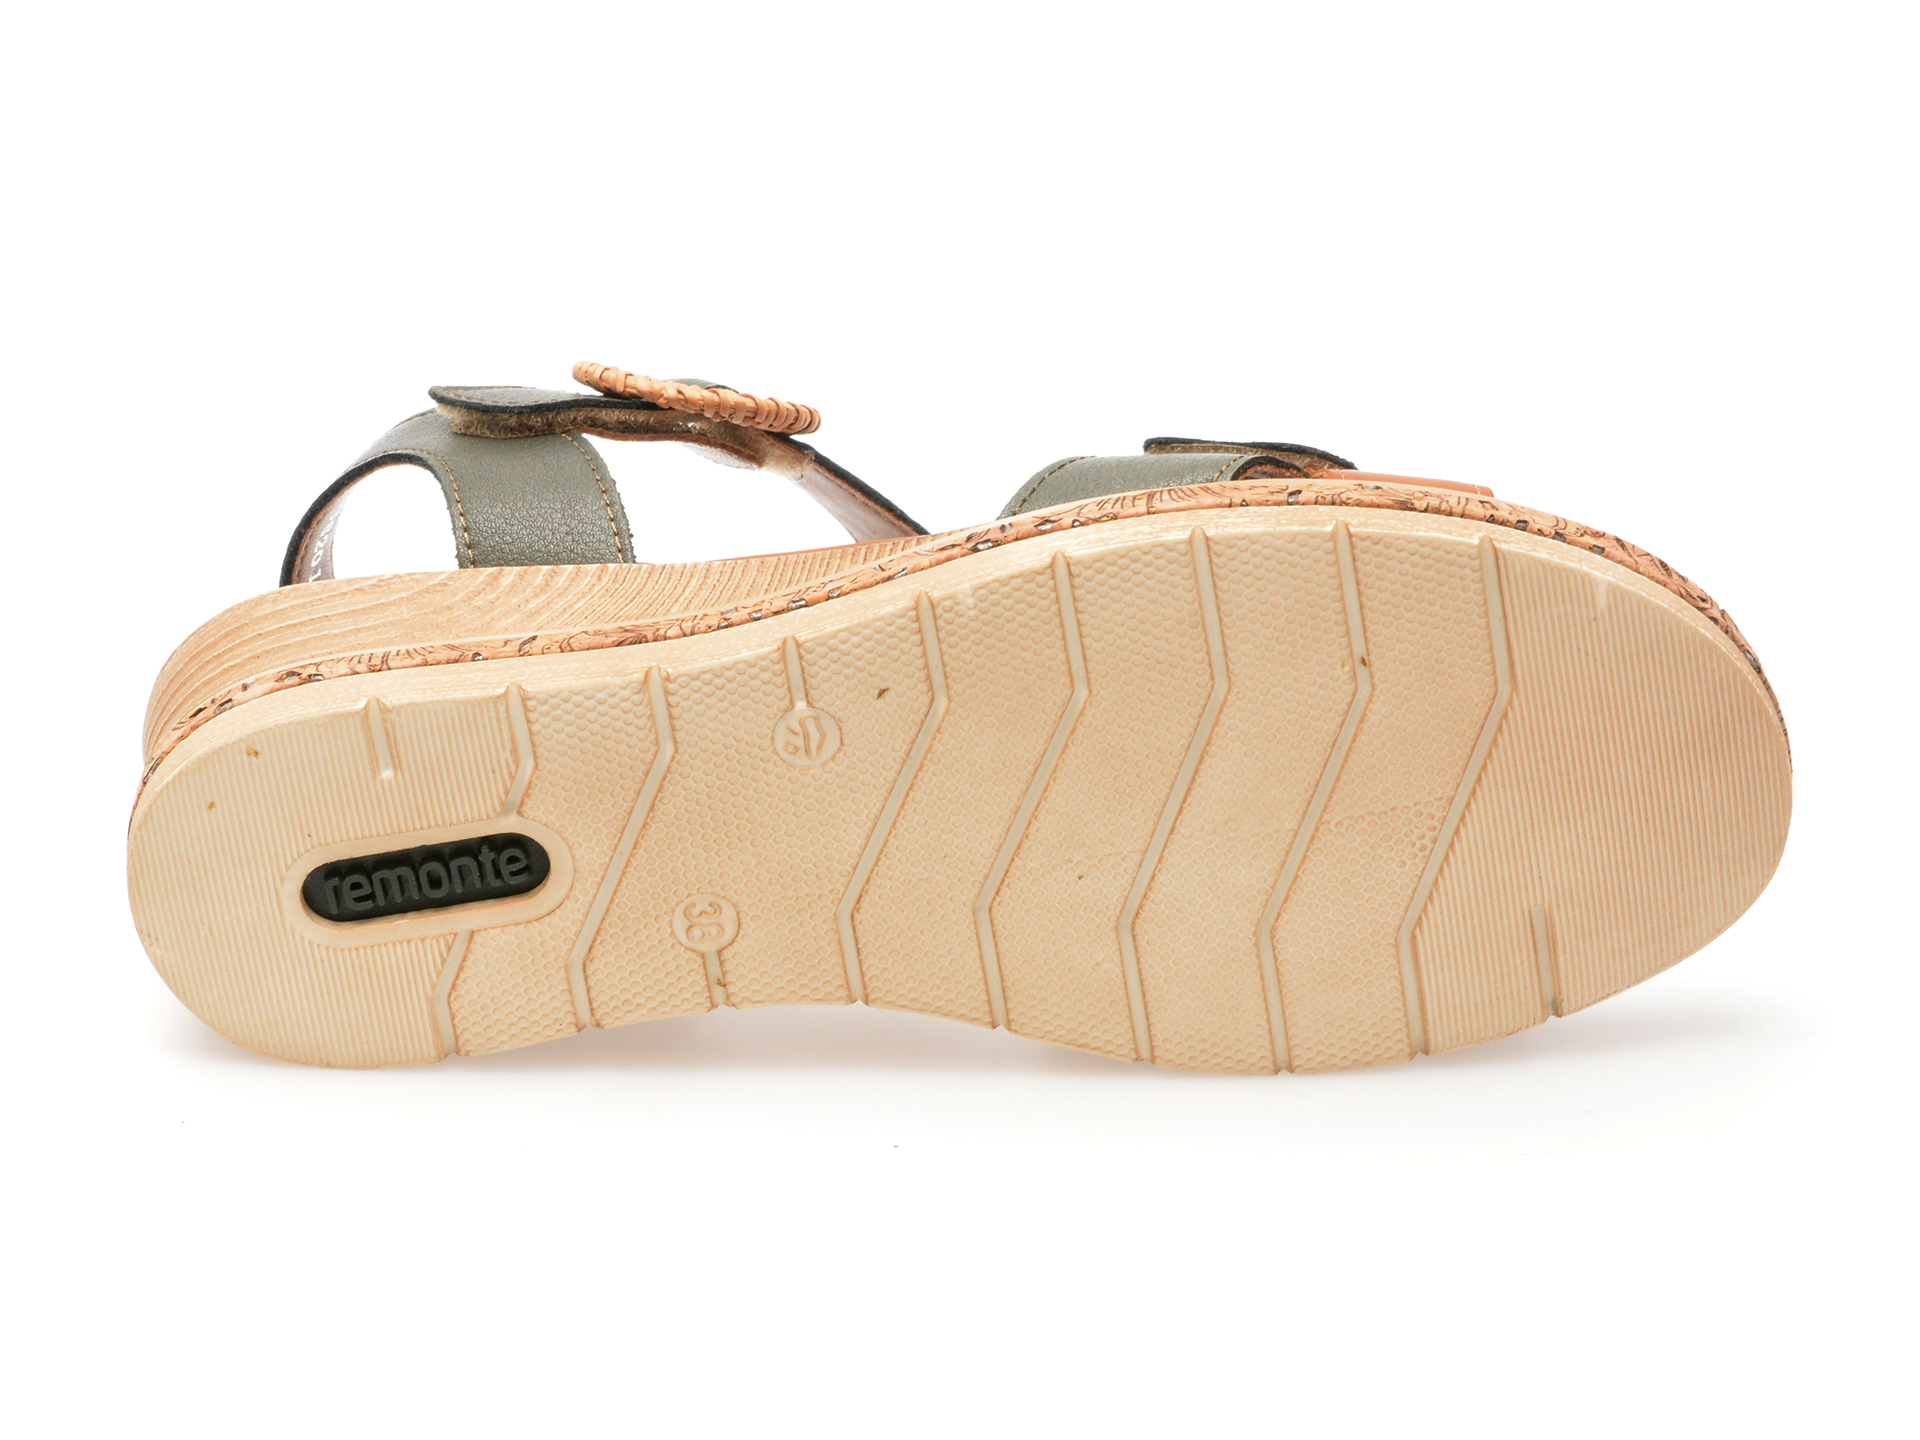 Sandale casusl REMONTE verzi, D3067, din piele naturala